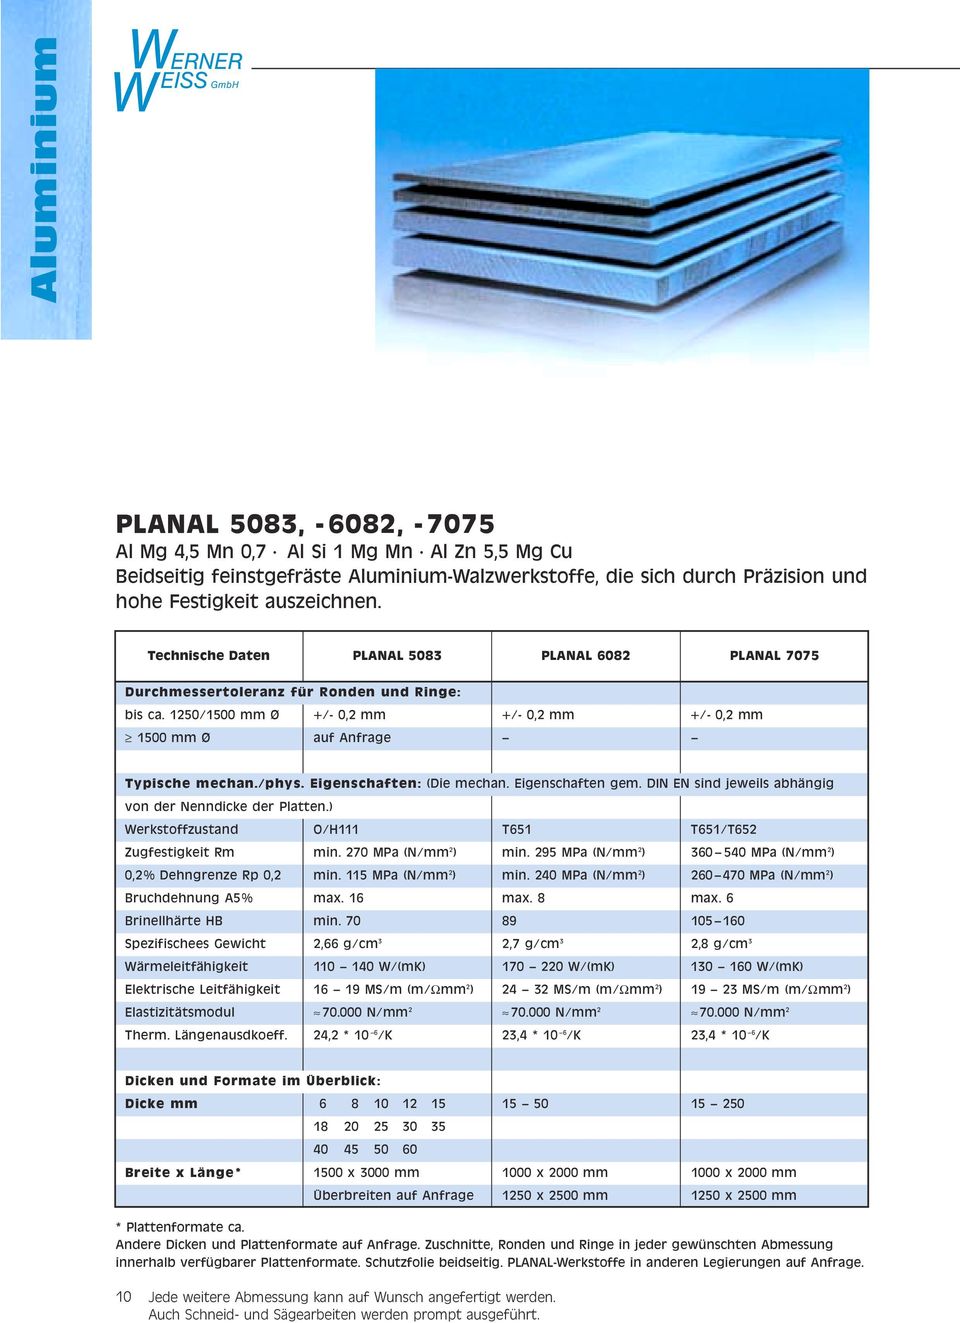 Eigenschaften: (Die mechan. Eigenschaften gem. DIN EN sind jeweils abhängig von der Nenndicke der Platten.) Werkstoffzustand O/H T65 T65/T65 Zugfestigkeit Rm min. 70 MPa (N/mm ) min.